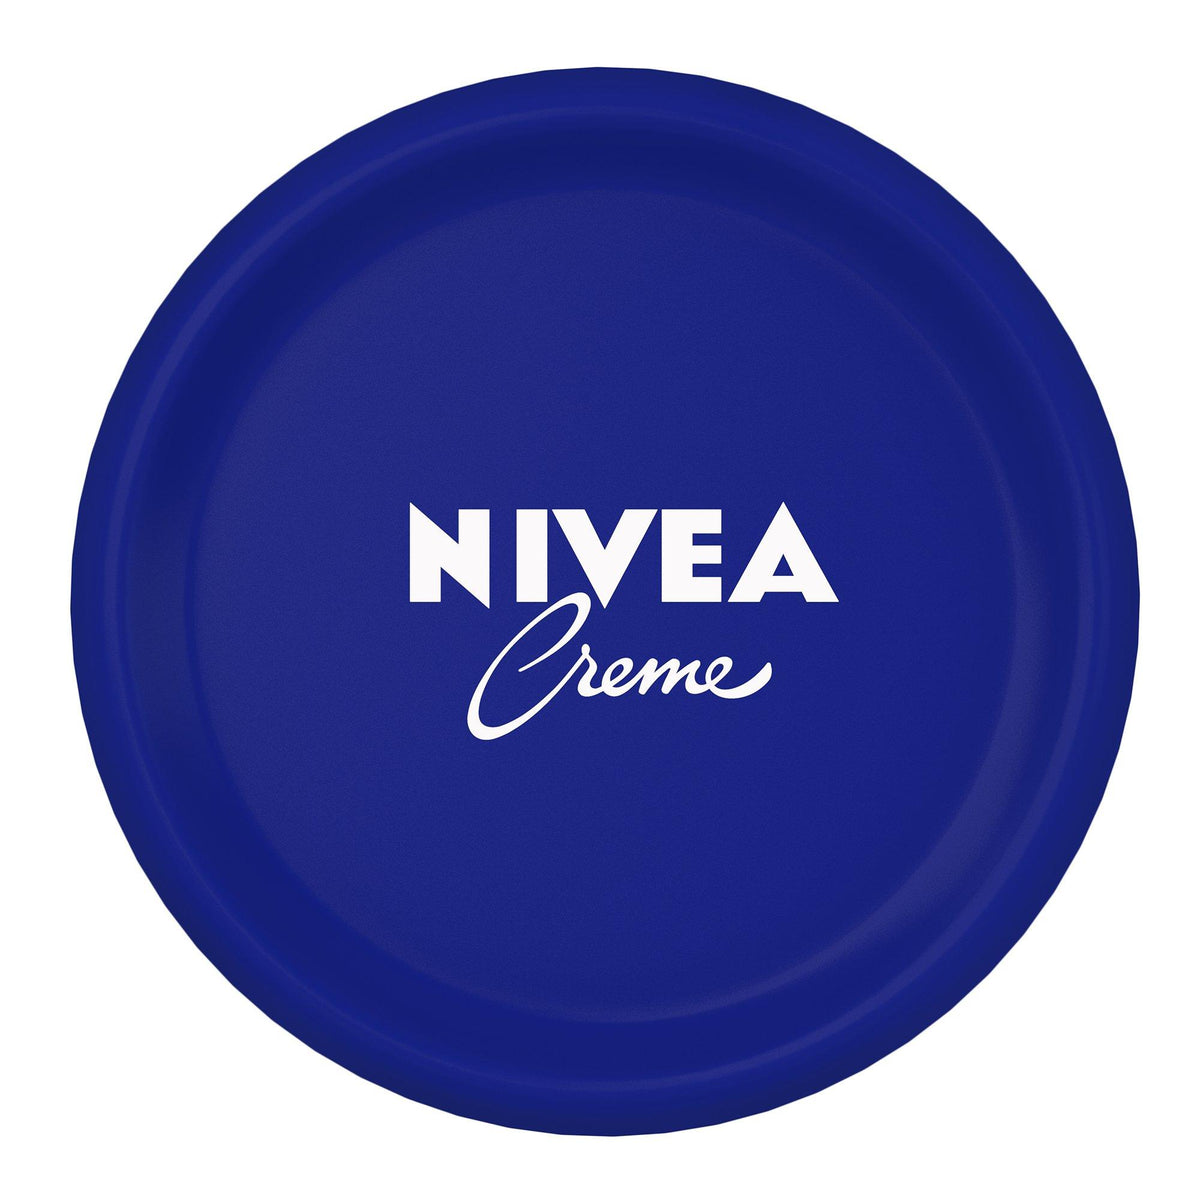 Nivea Crème All Purpose Cream (200 ml) Nivea